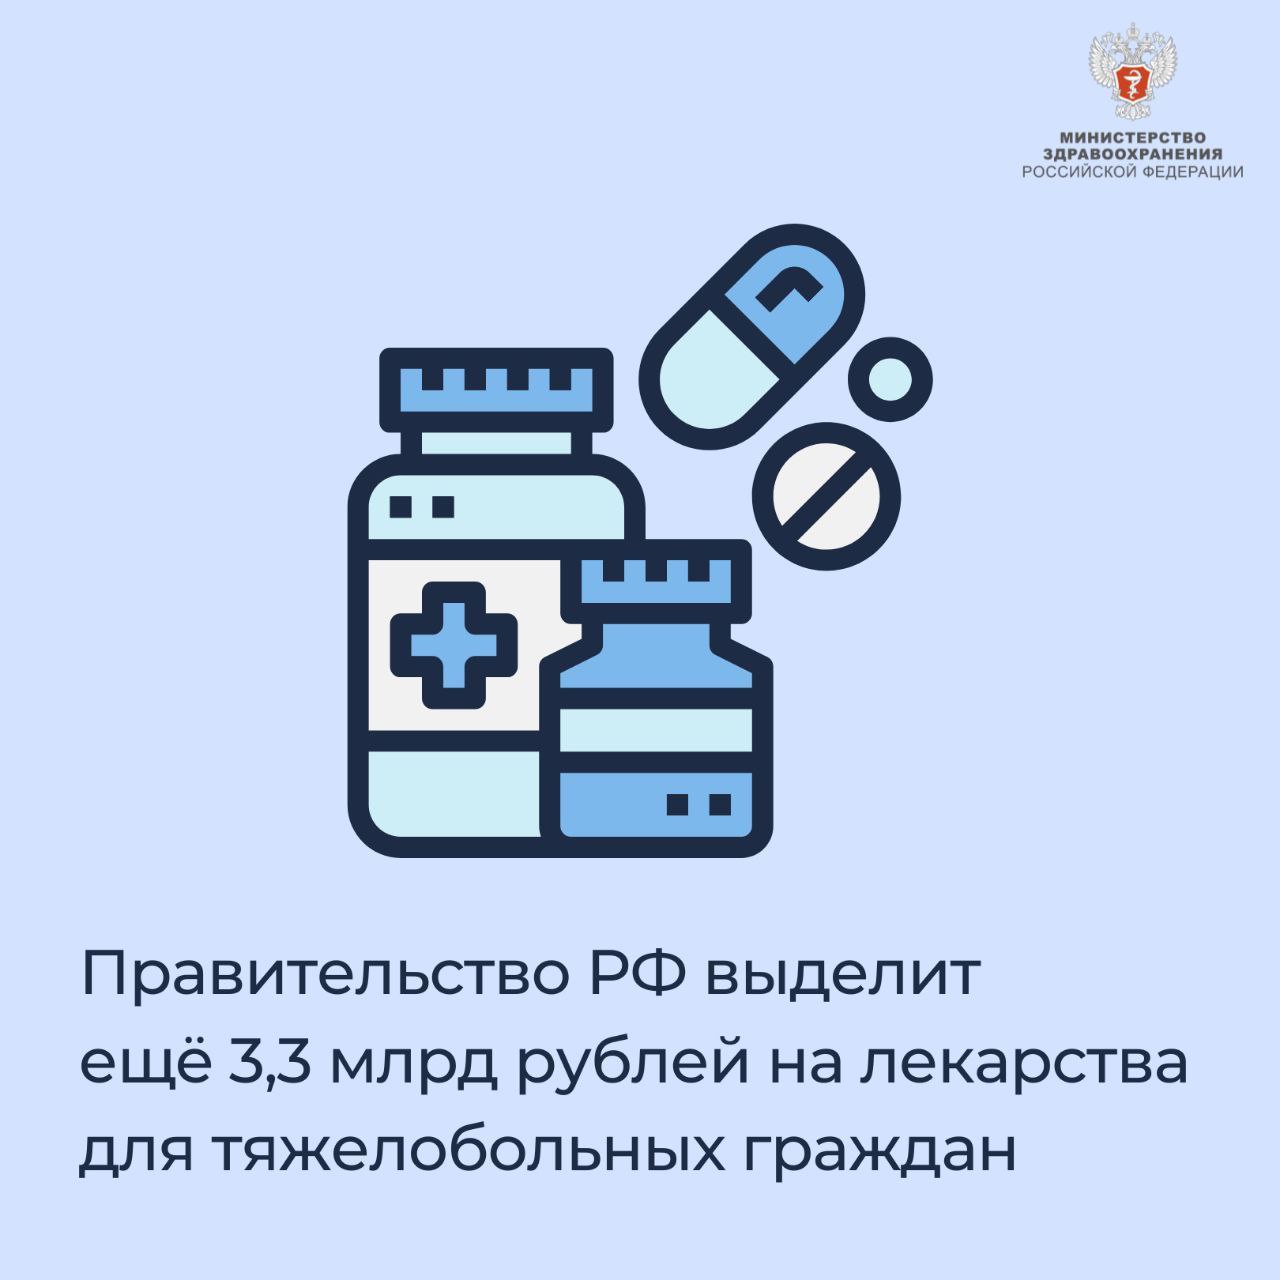 Правительство РФ выделит еще 3,3 млрд рублей на лекарства для тяжелобольных граждан 